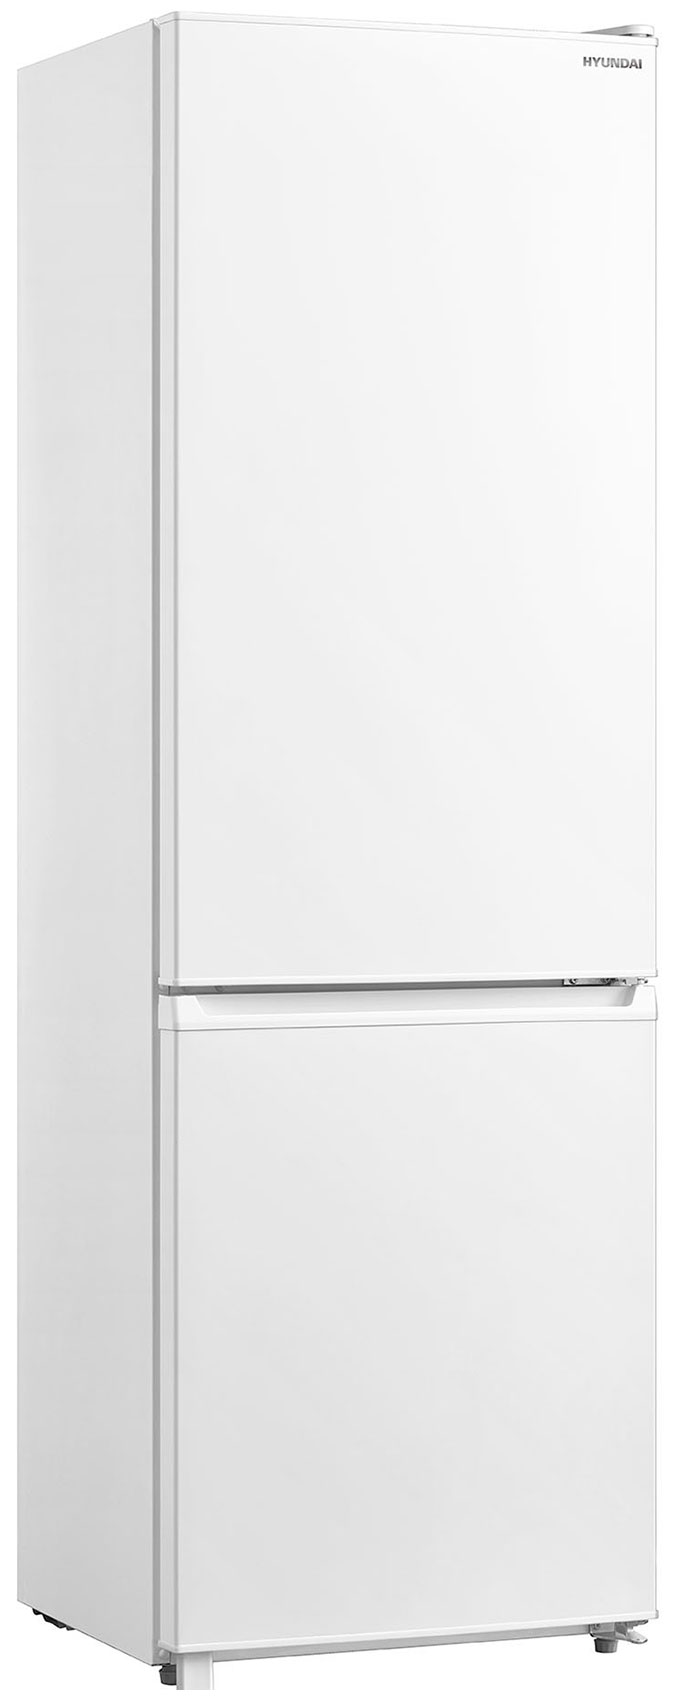 Двухкамерный холодильник Hyundai CC3091LWT белый двухкамерный холодильник hyundai cc3091lwt белый